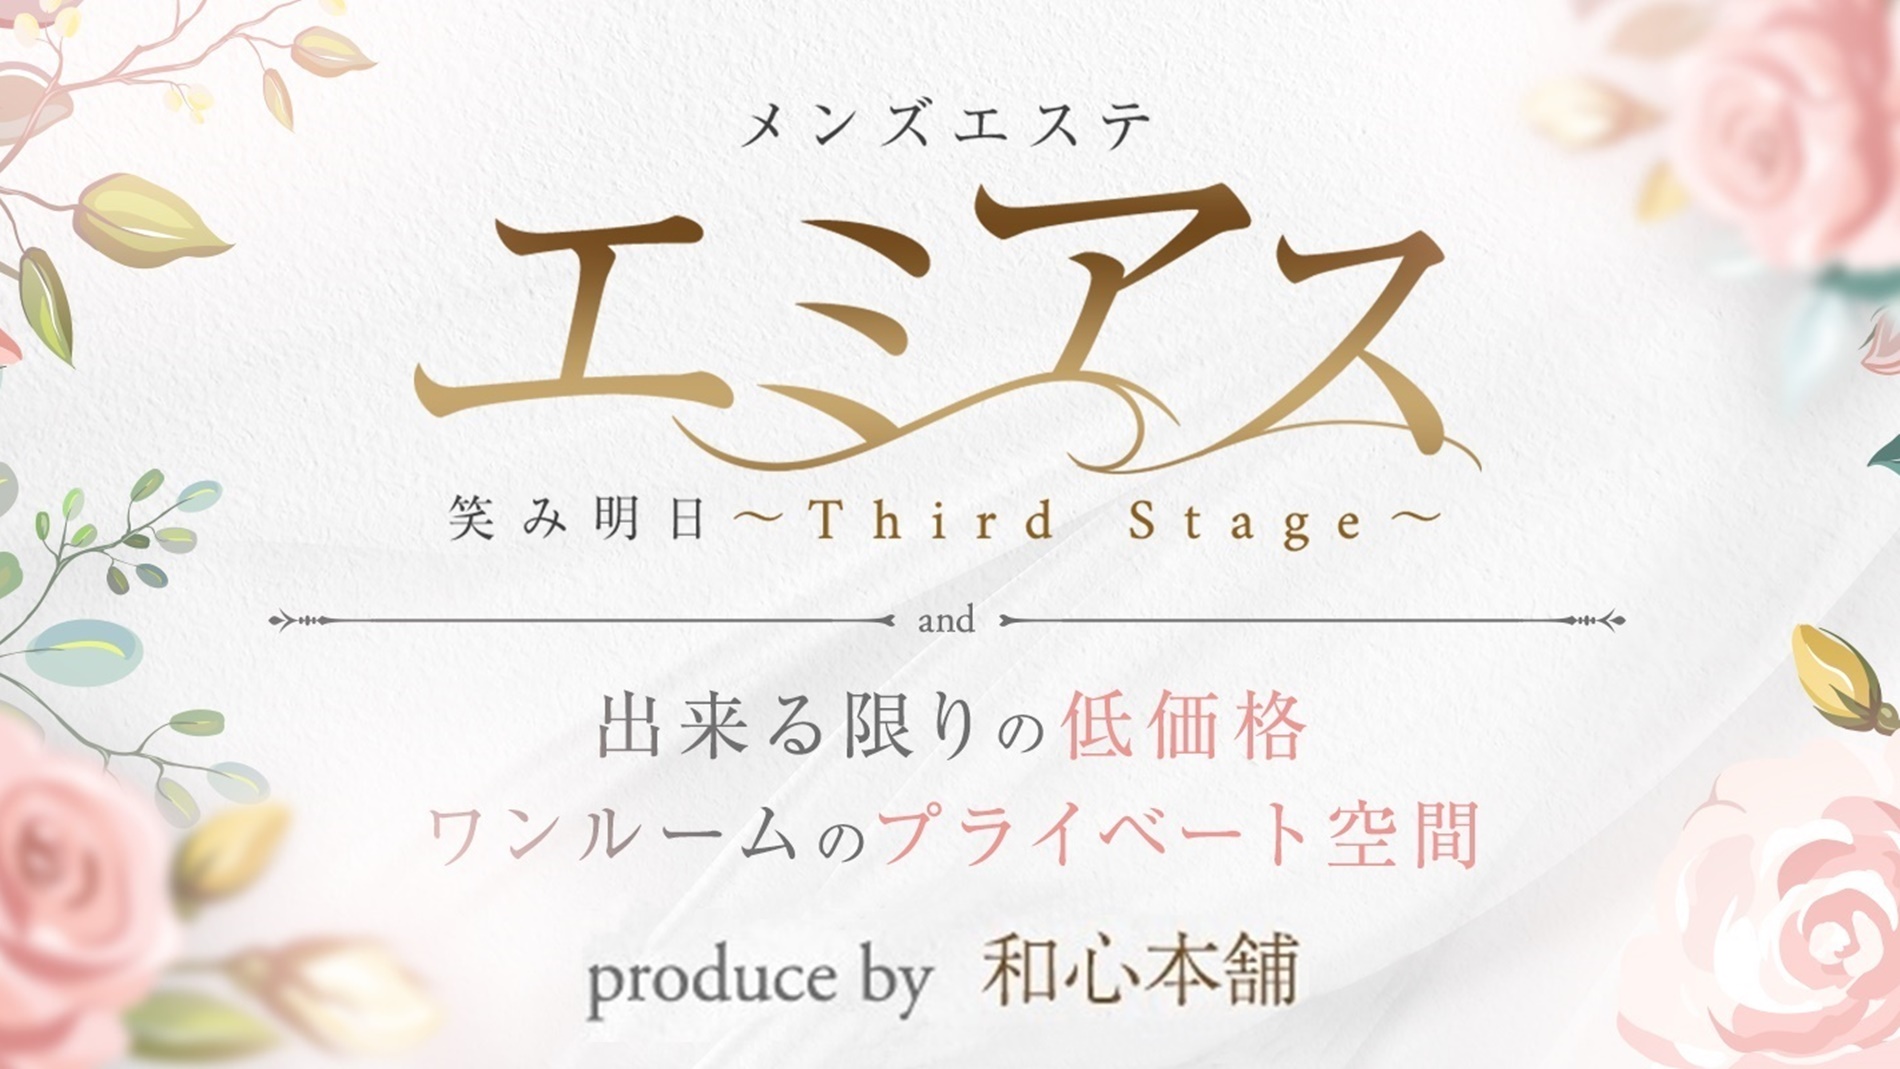 浜松メンズエステ『エミアス〜Third Stage〜』